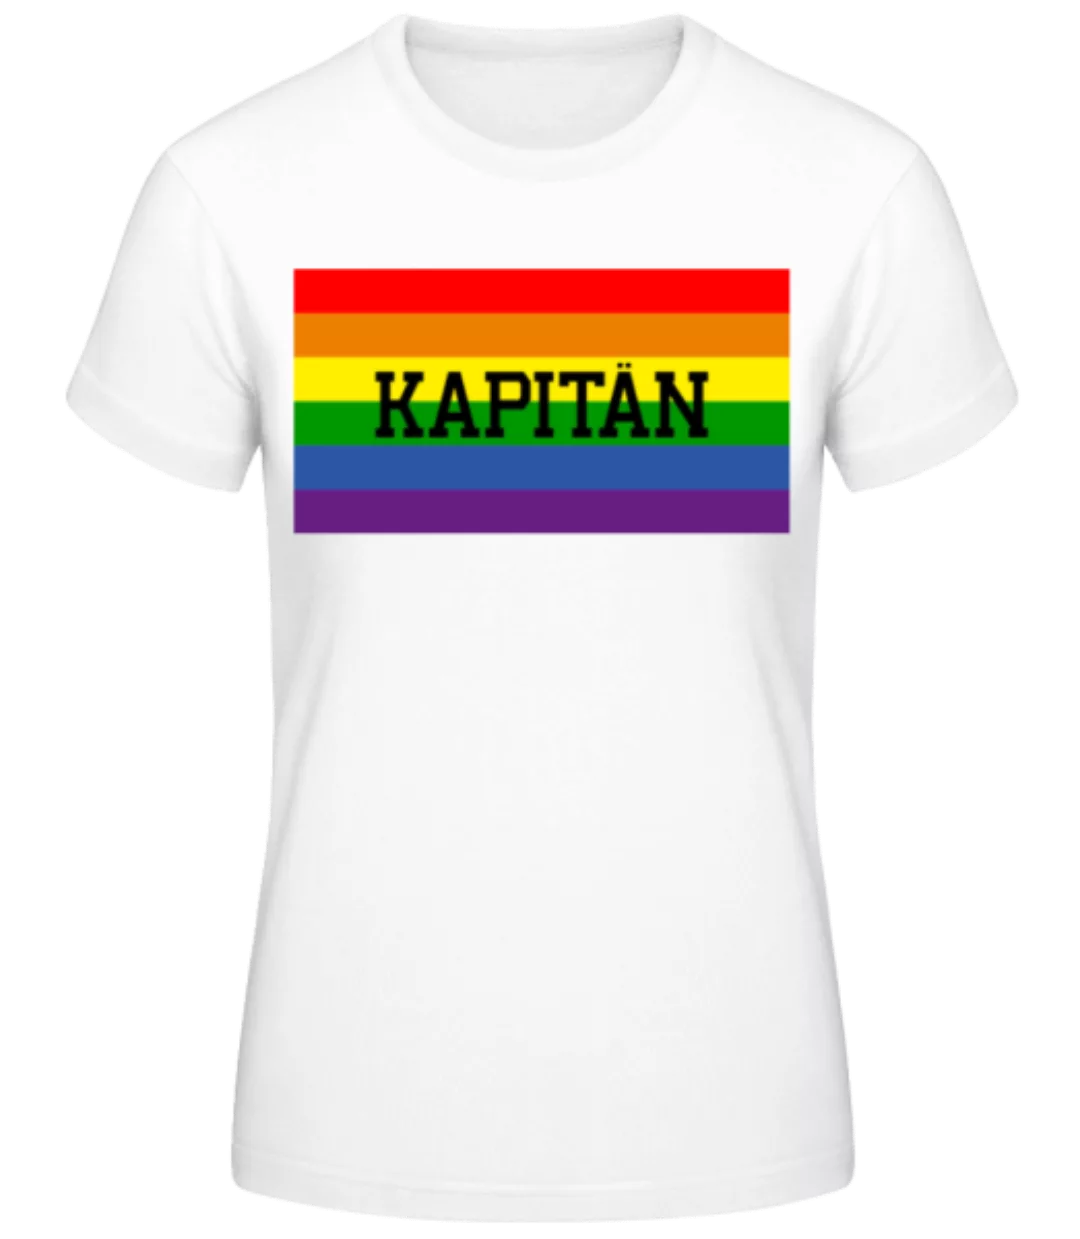 Kapitän · Frauen Basic T-Shirt günstig online kaufen